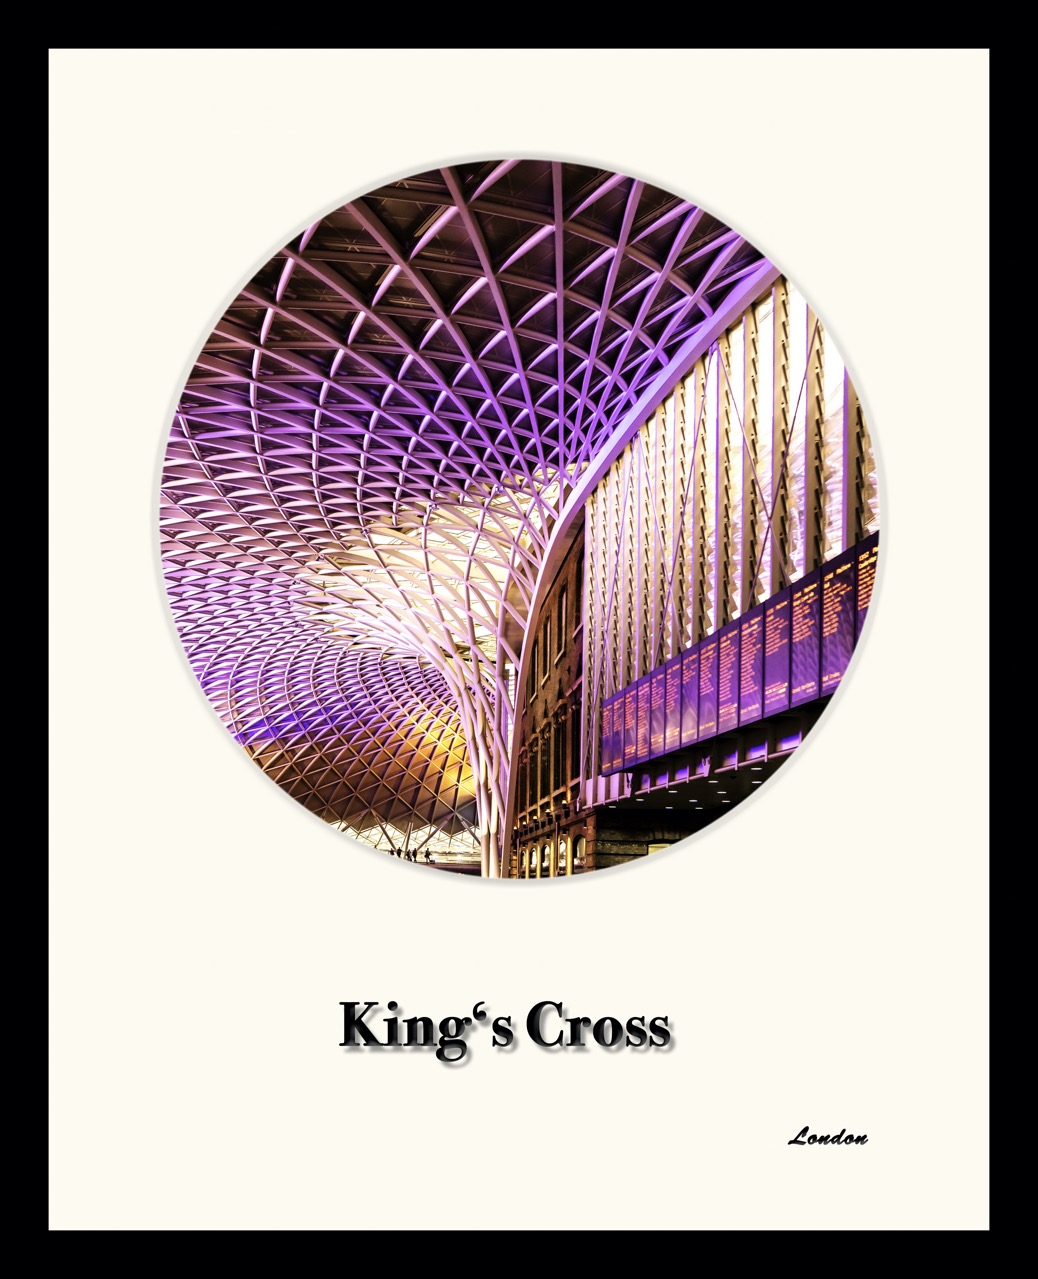 Motiv Kings Cross Station